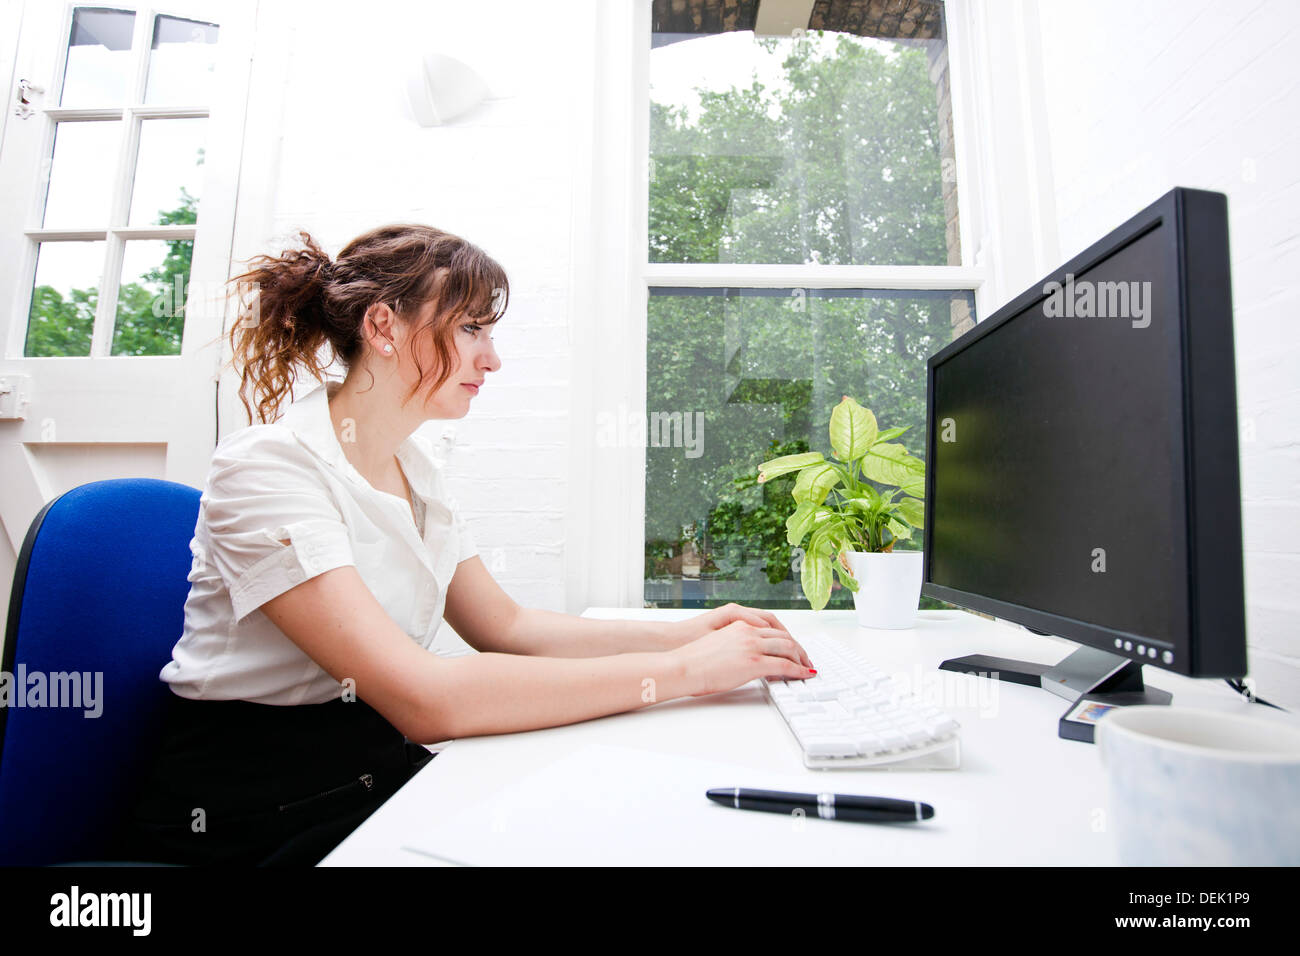 Vue latérale young businesswoman using computer desk Banque D'Images